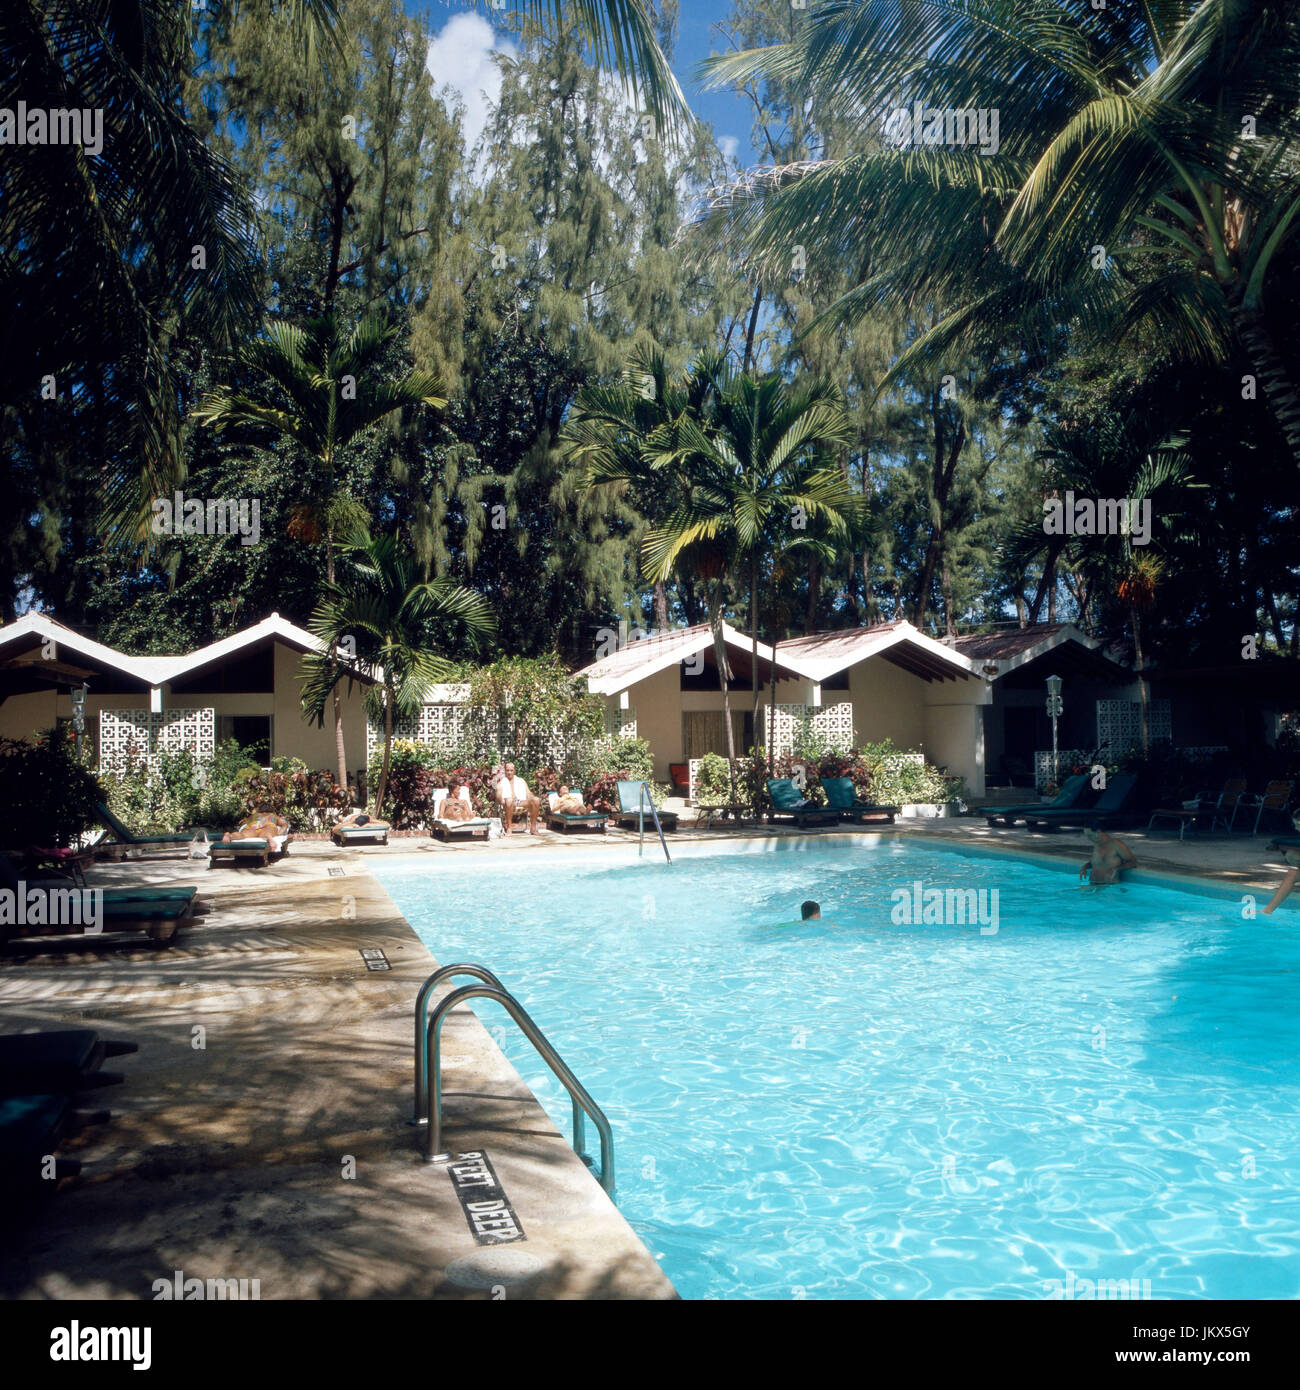 Piscine d'im Hotel Colony Club, la Barbade des années 1980 er Jahre. Espace piscine de l'hôtel Colony Club, la Barbade des années 1980. Banque D'Images